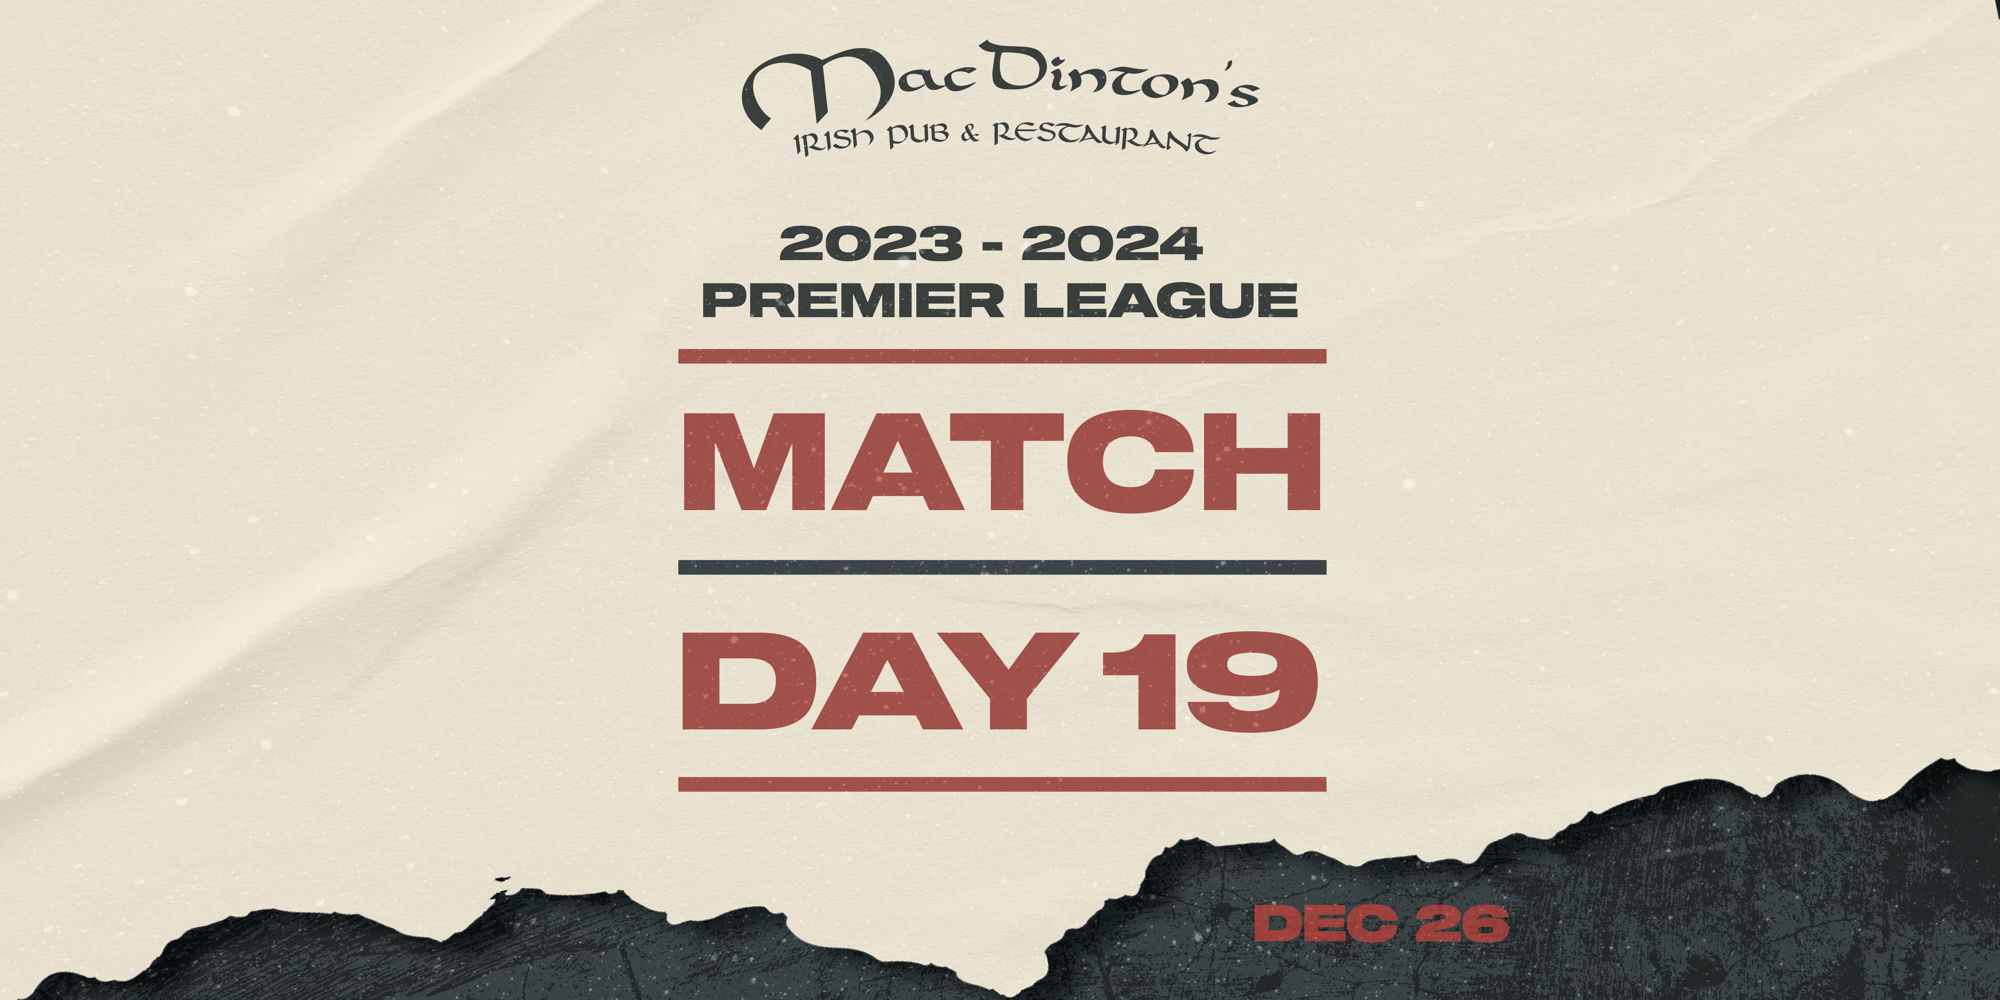 Premier League Match Day 19 promotional image